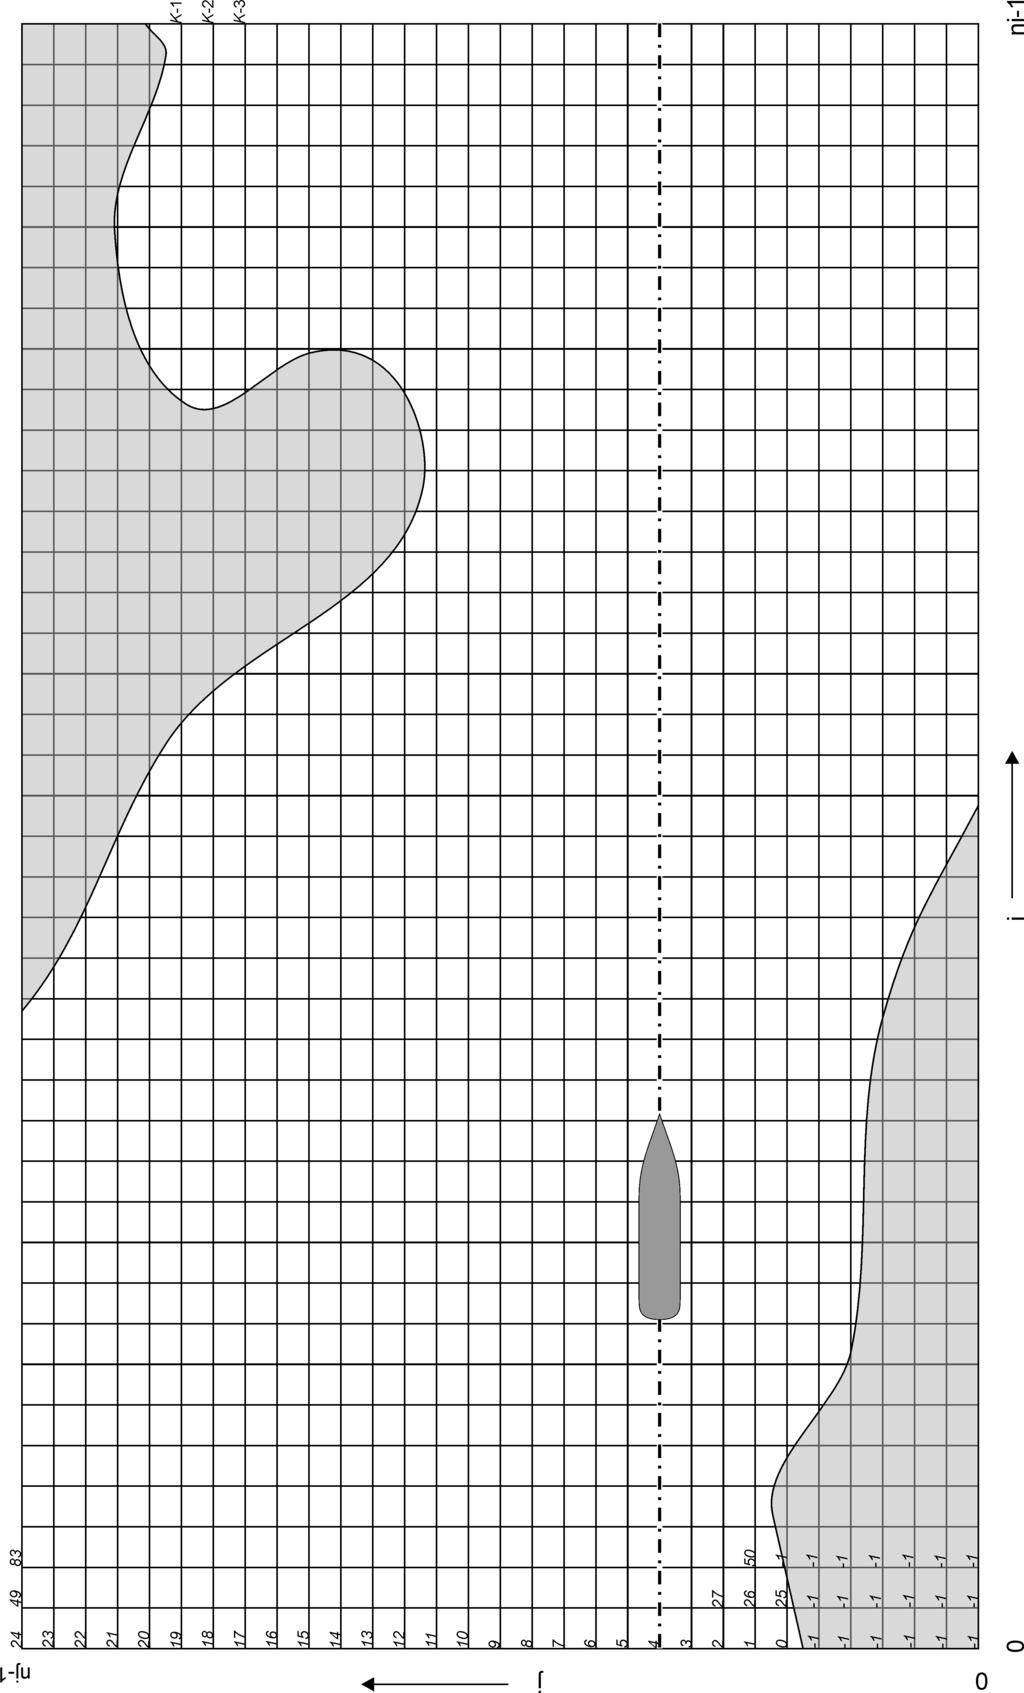 Abb. 4. Berechnungsgitter mit teilweise trocken liegenden Gebieten (grau).